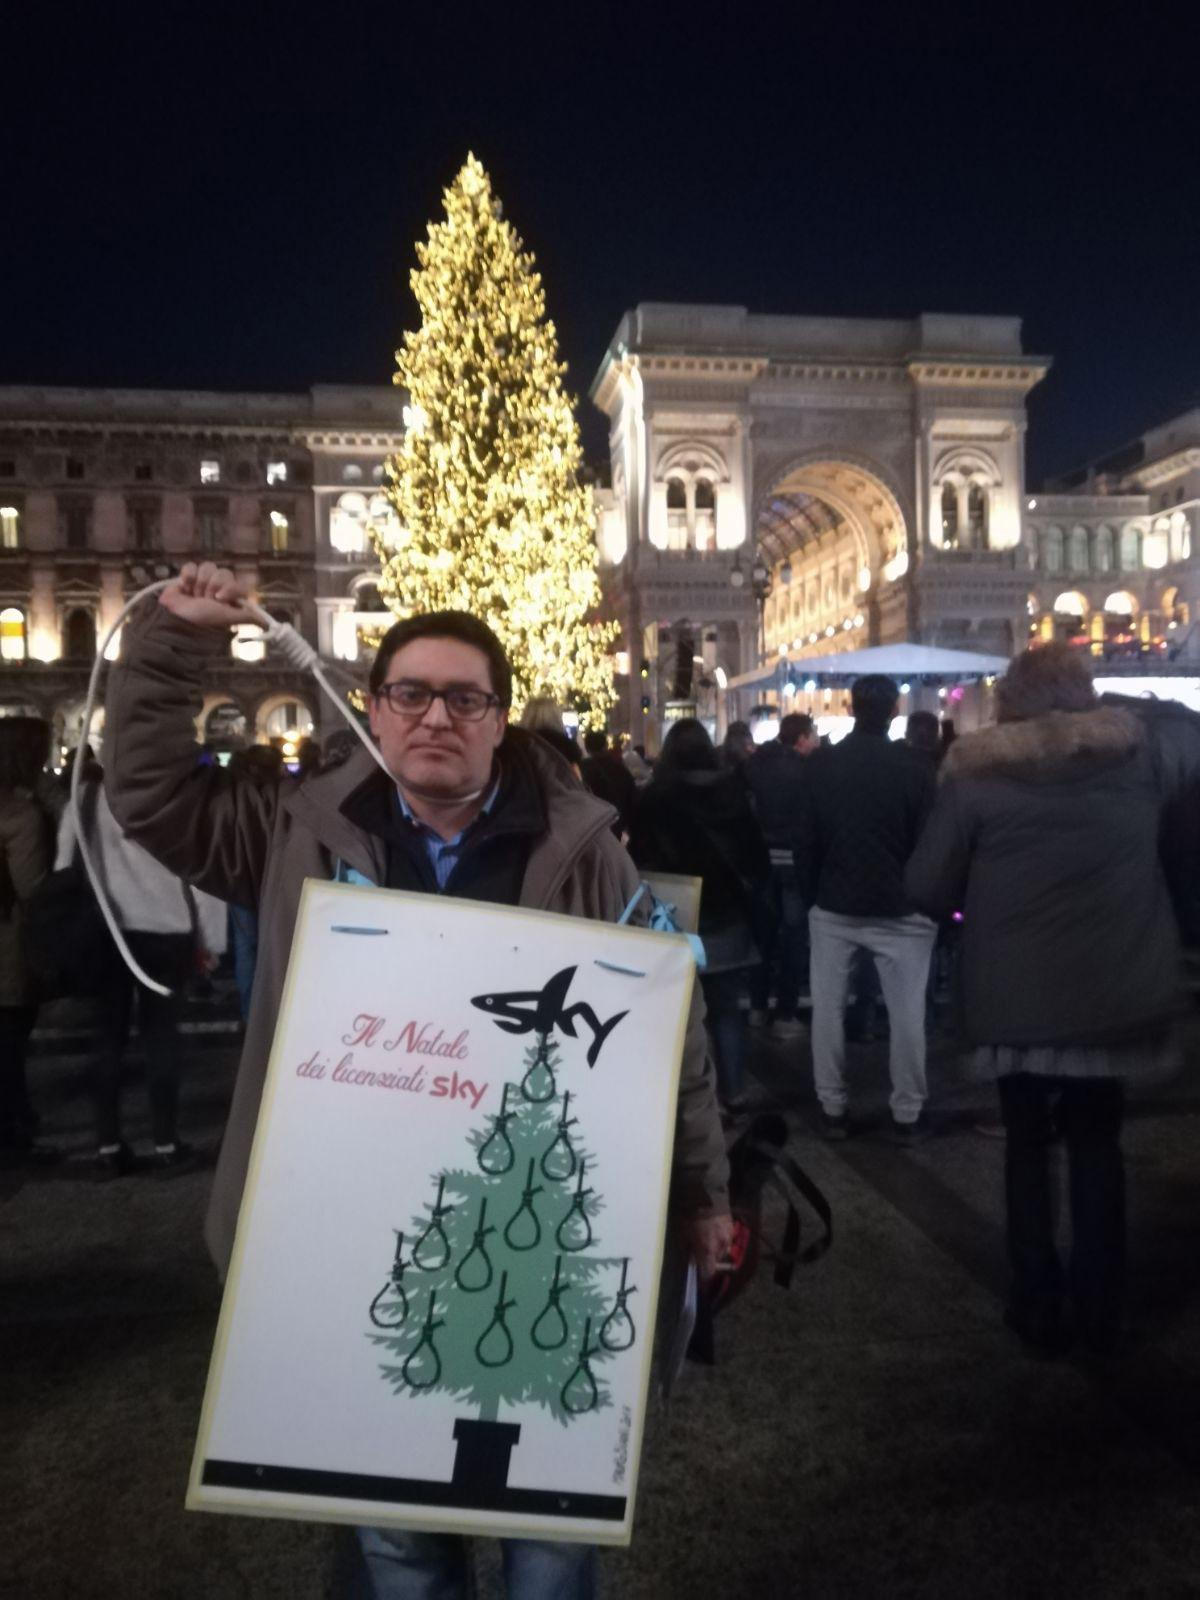 Sotto il grande albero donato da Sky alla città di Milano, decine di lavoratori licenziati o trasferiti dalla sede di Roma protestano contro la pay-tv, Milano, 6 dicembre 2017. ANSA